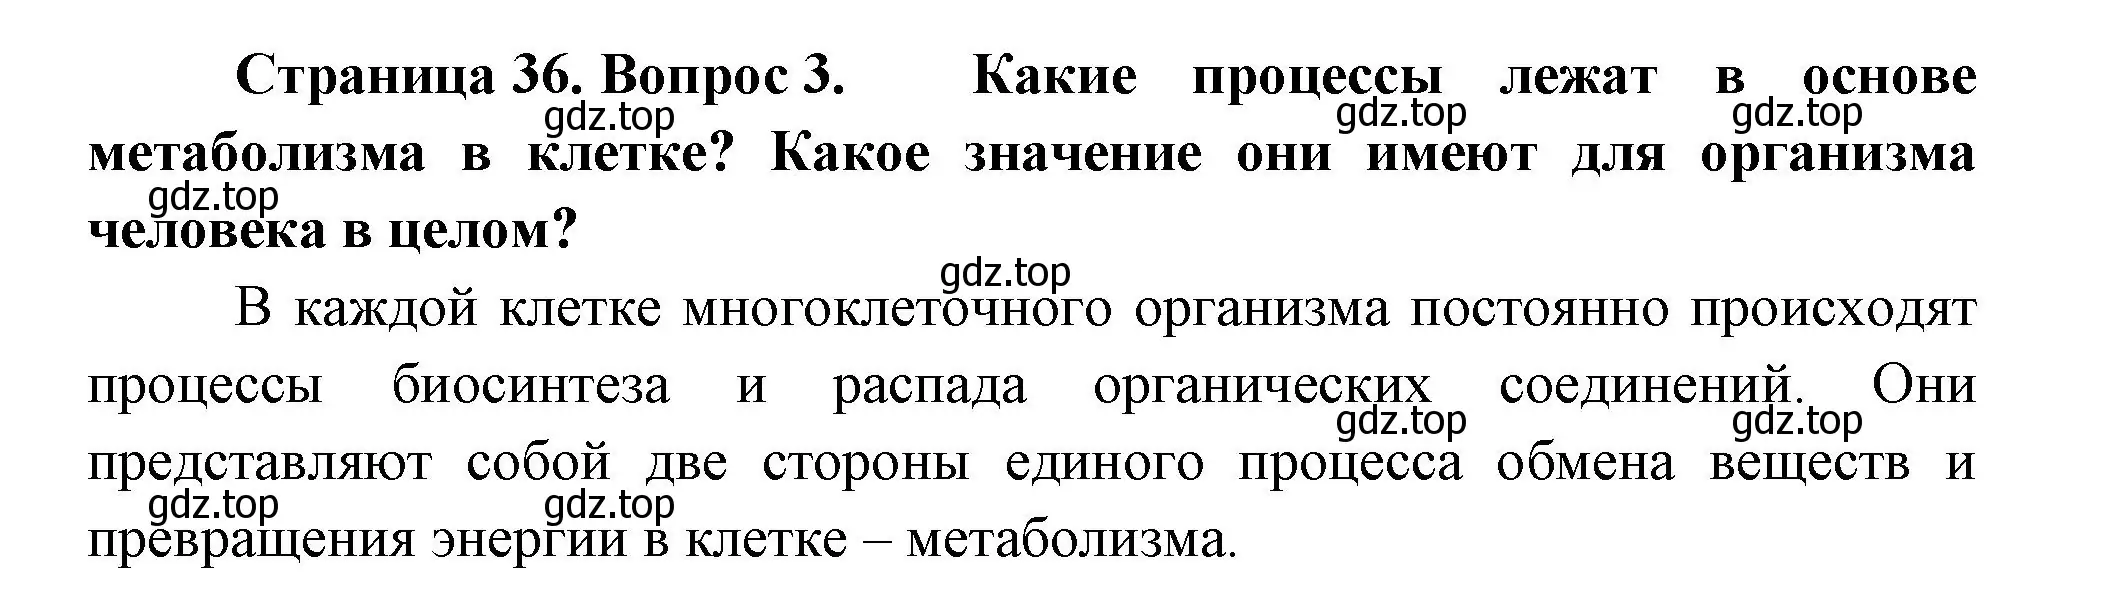 Решение номер 3 (страница 36) гдз по биологии 9 класс Пасечник, Каменский, учебник